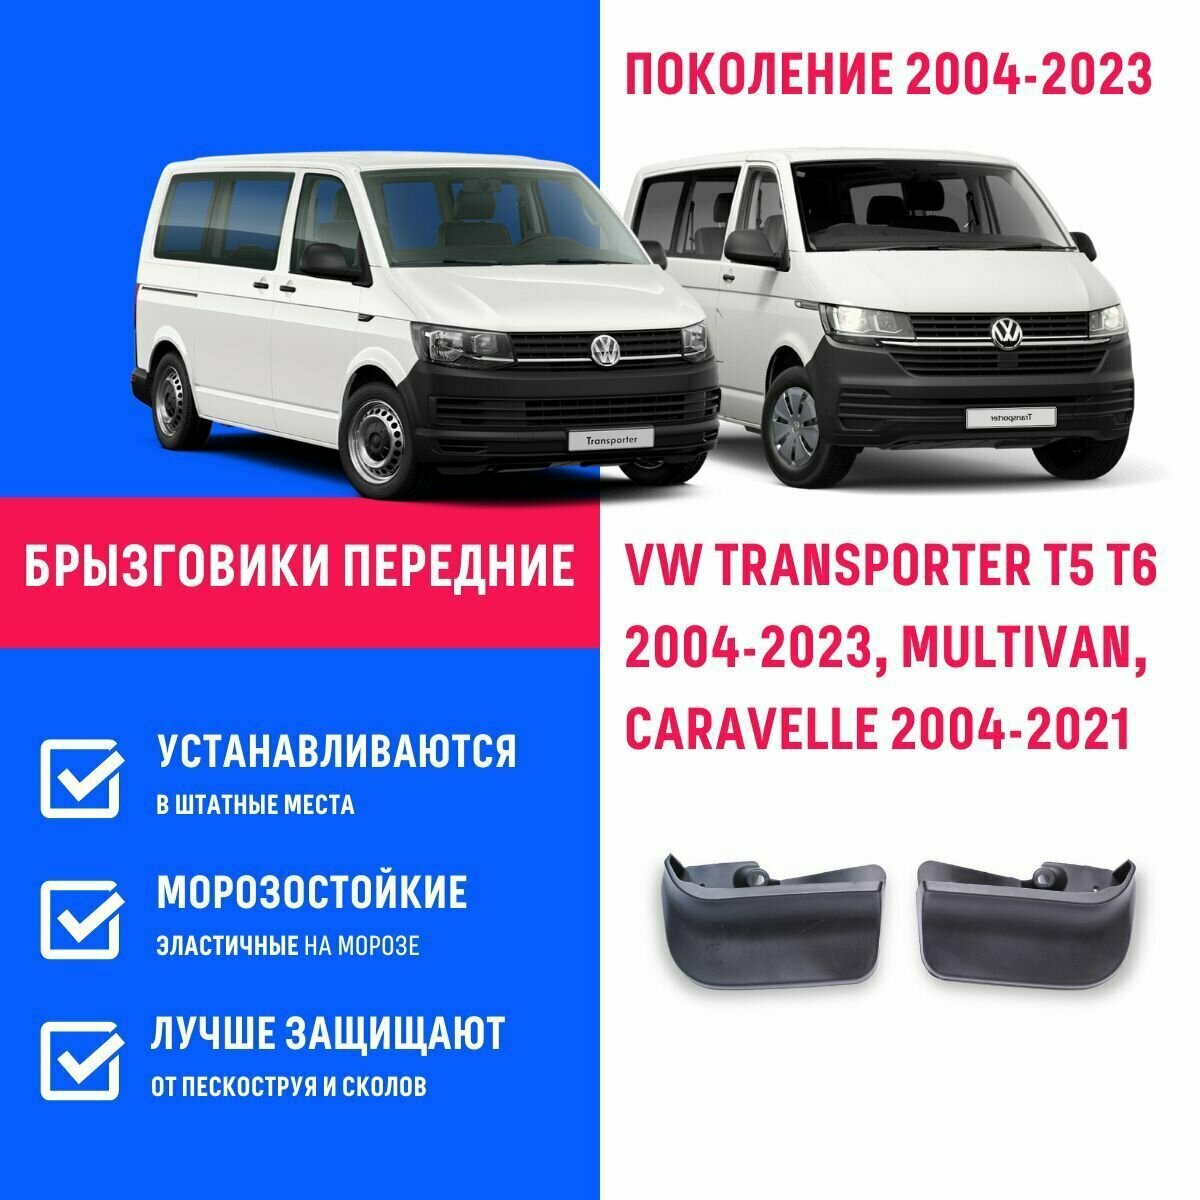 Брызговики передние VW TRANSPORTER T5 T6 2004-2023, MULTIVAN, CARAVELLE поколение 2004-2021